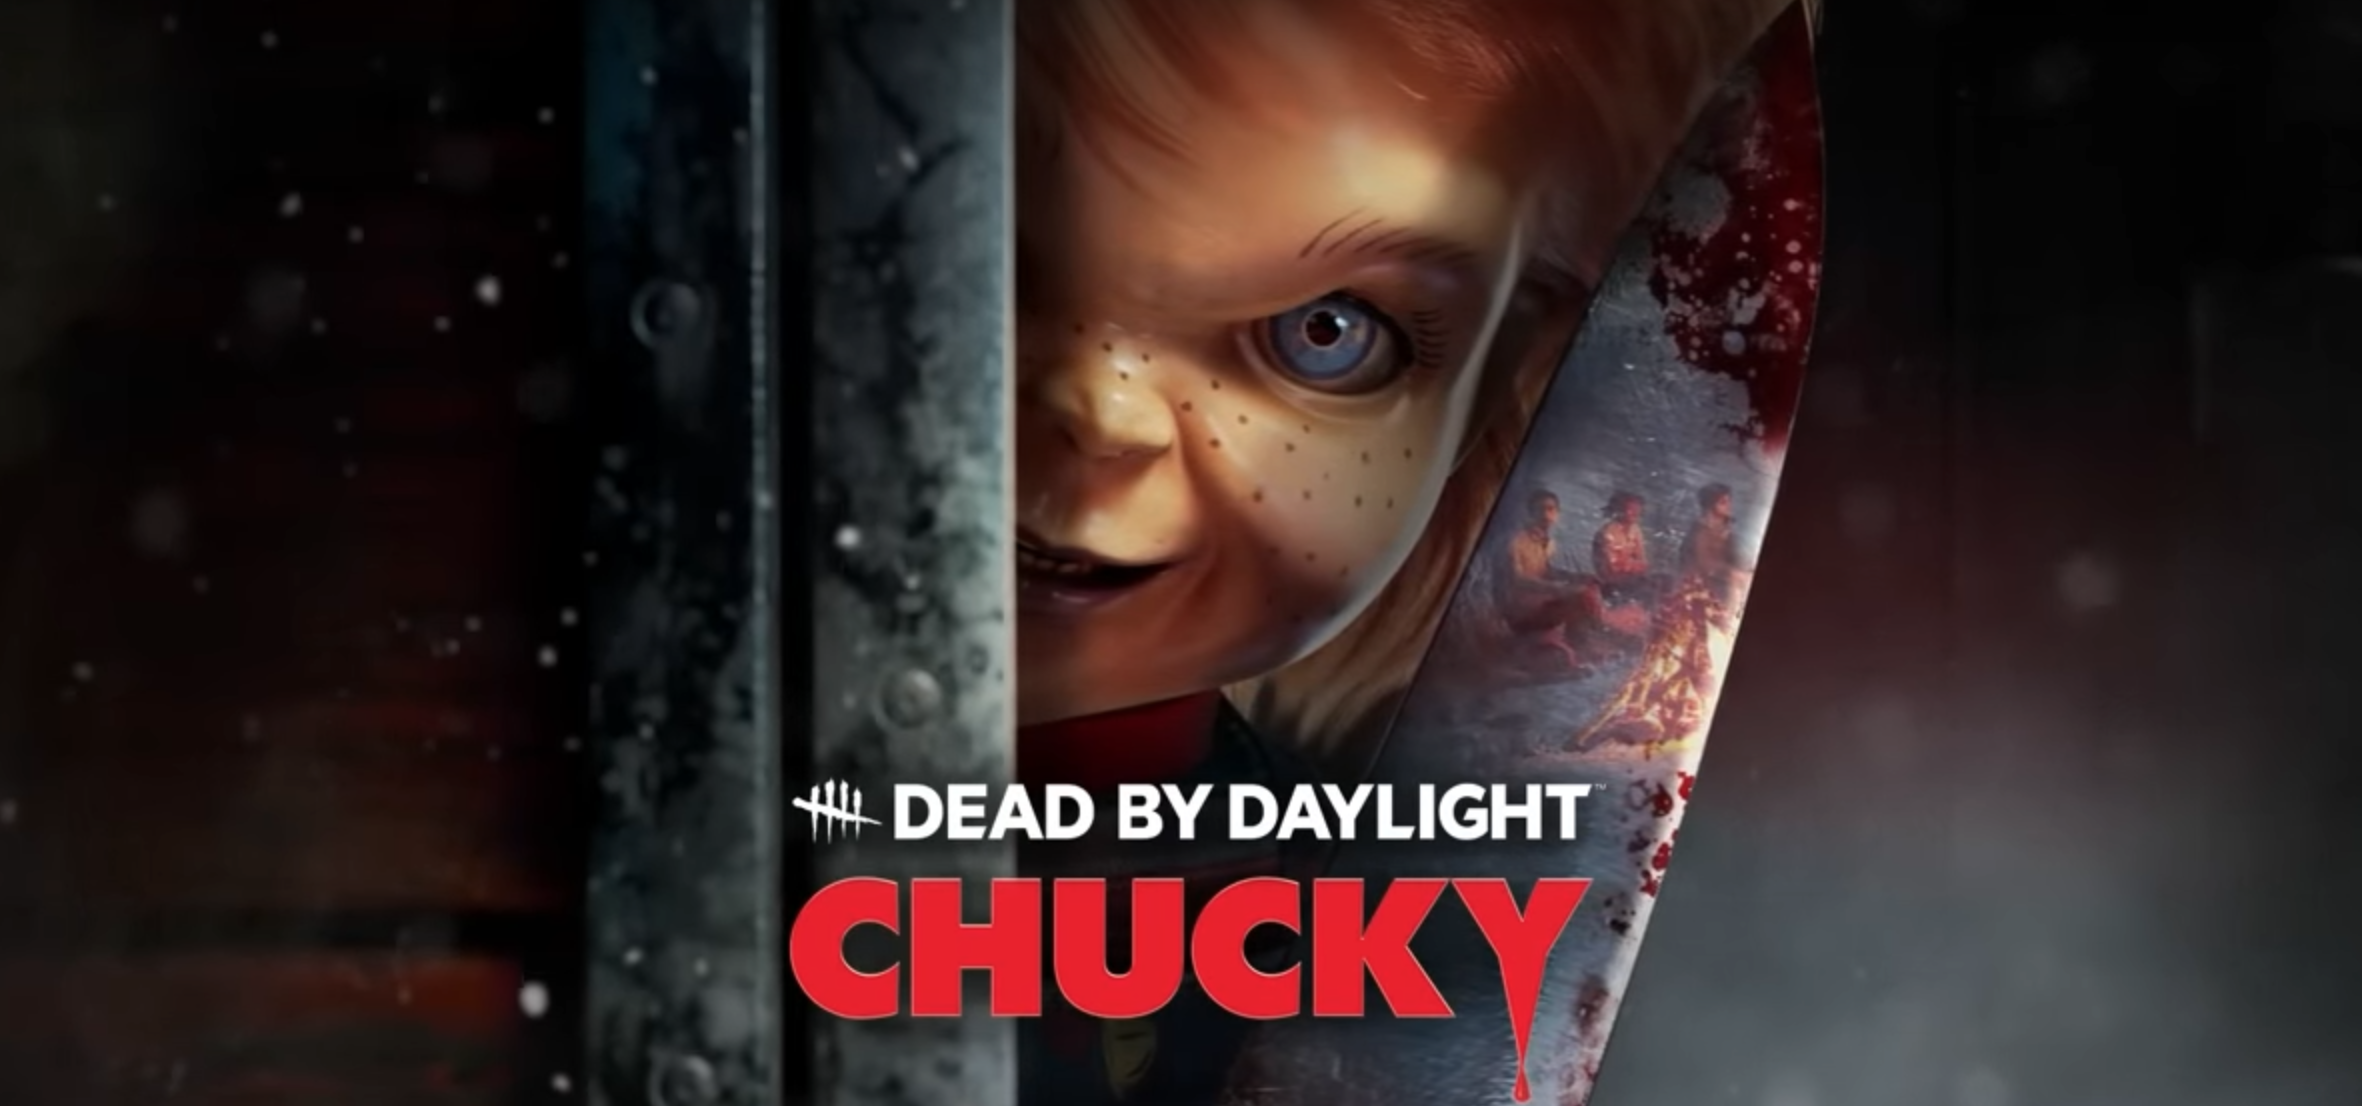 ʻO Chucky